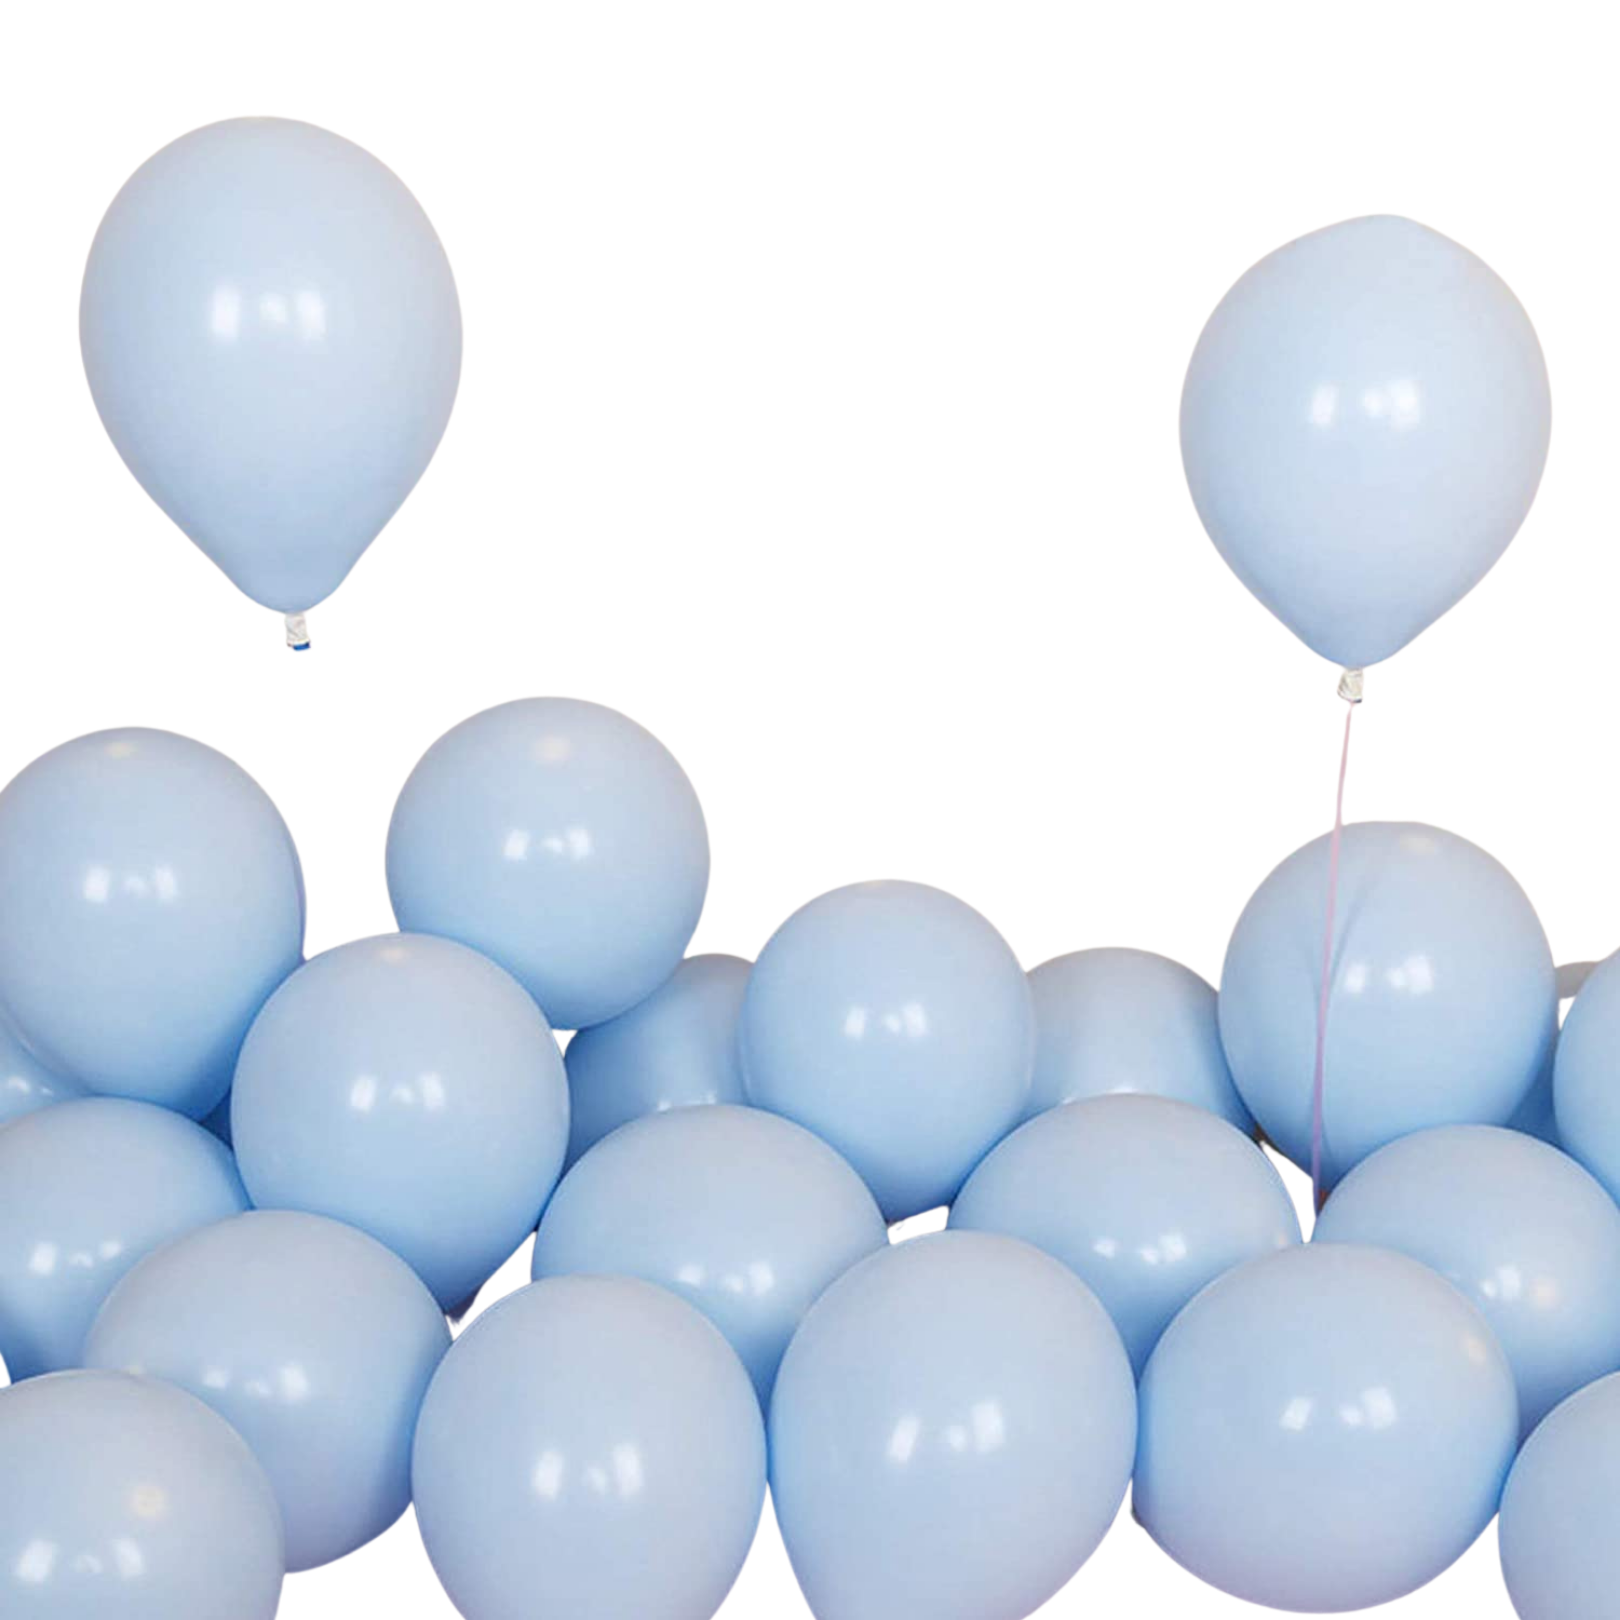 x10 Ballons pastel bleu vert